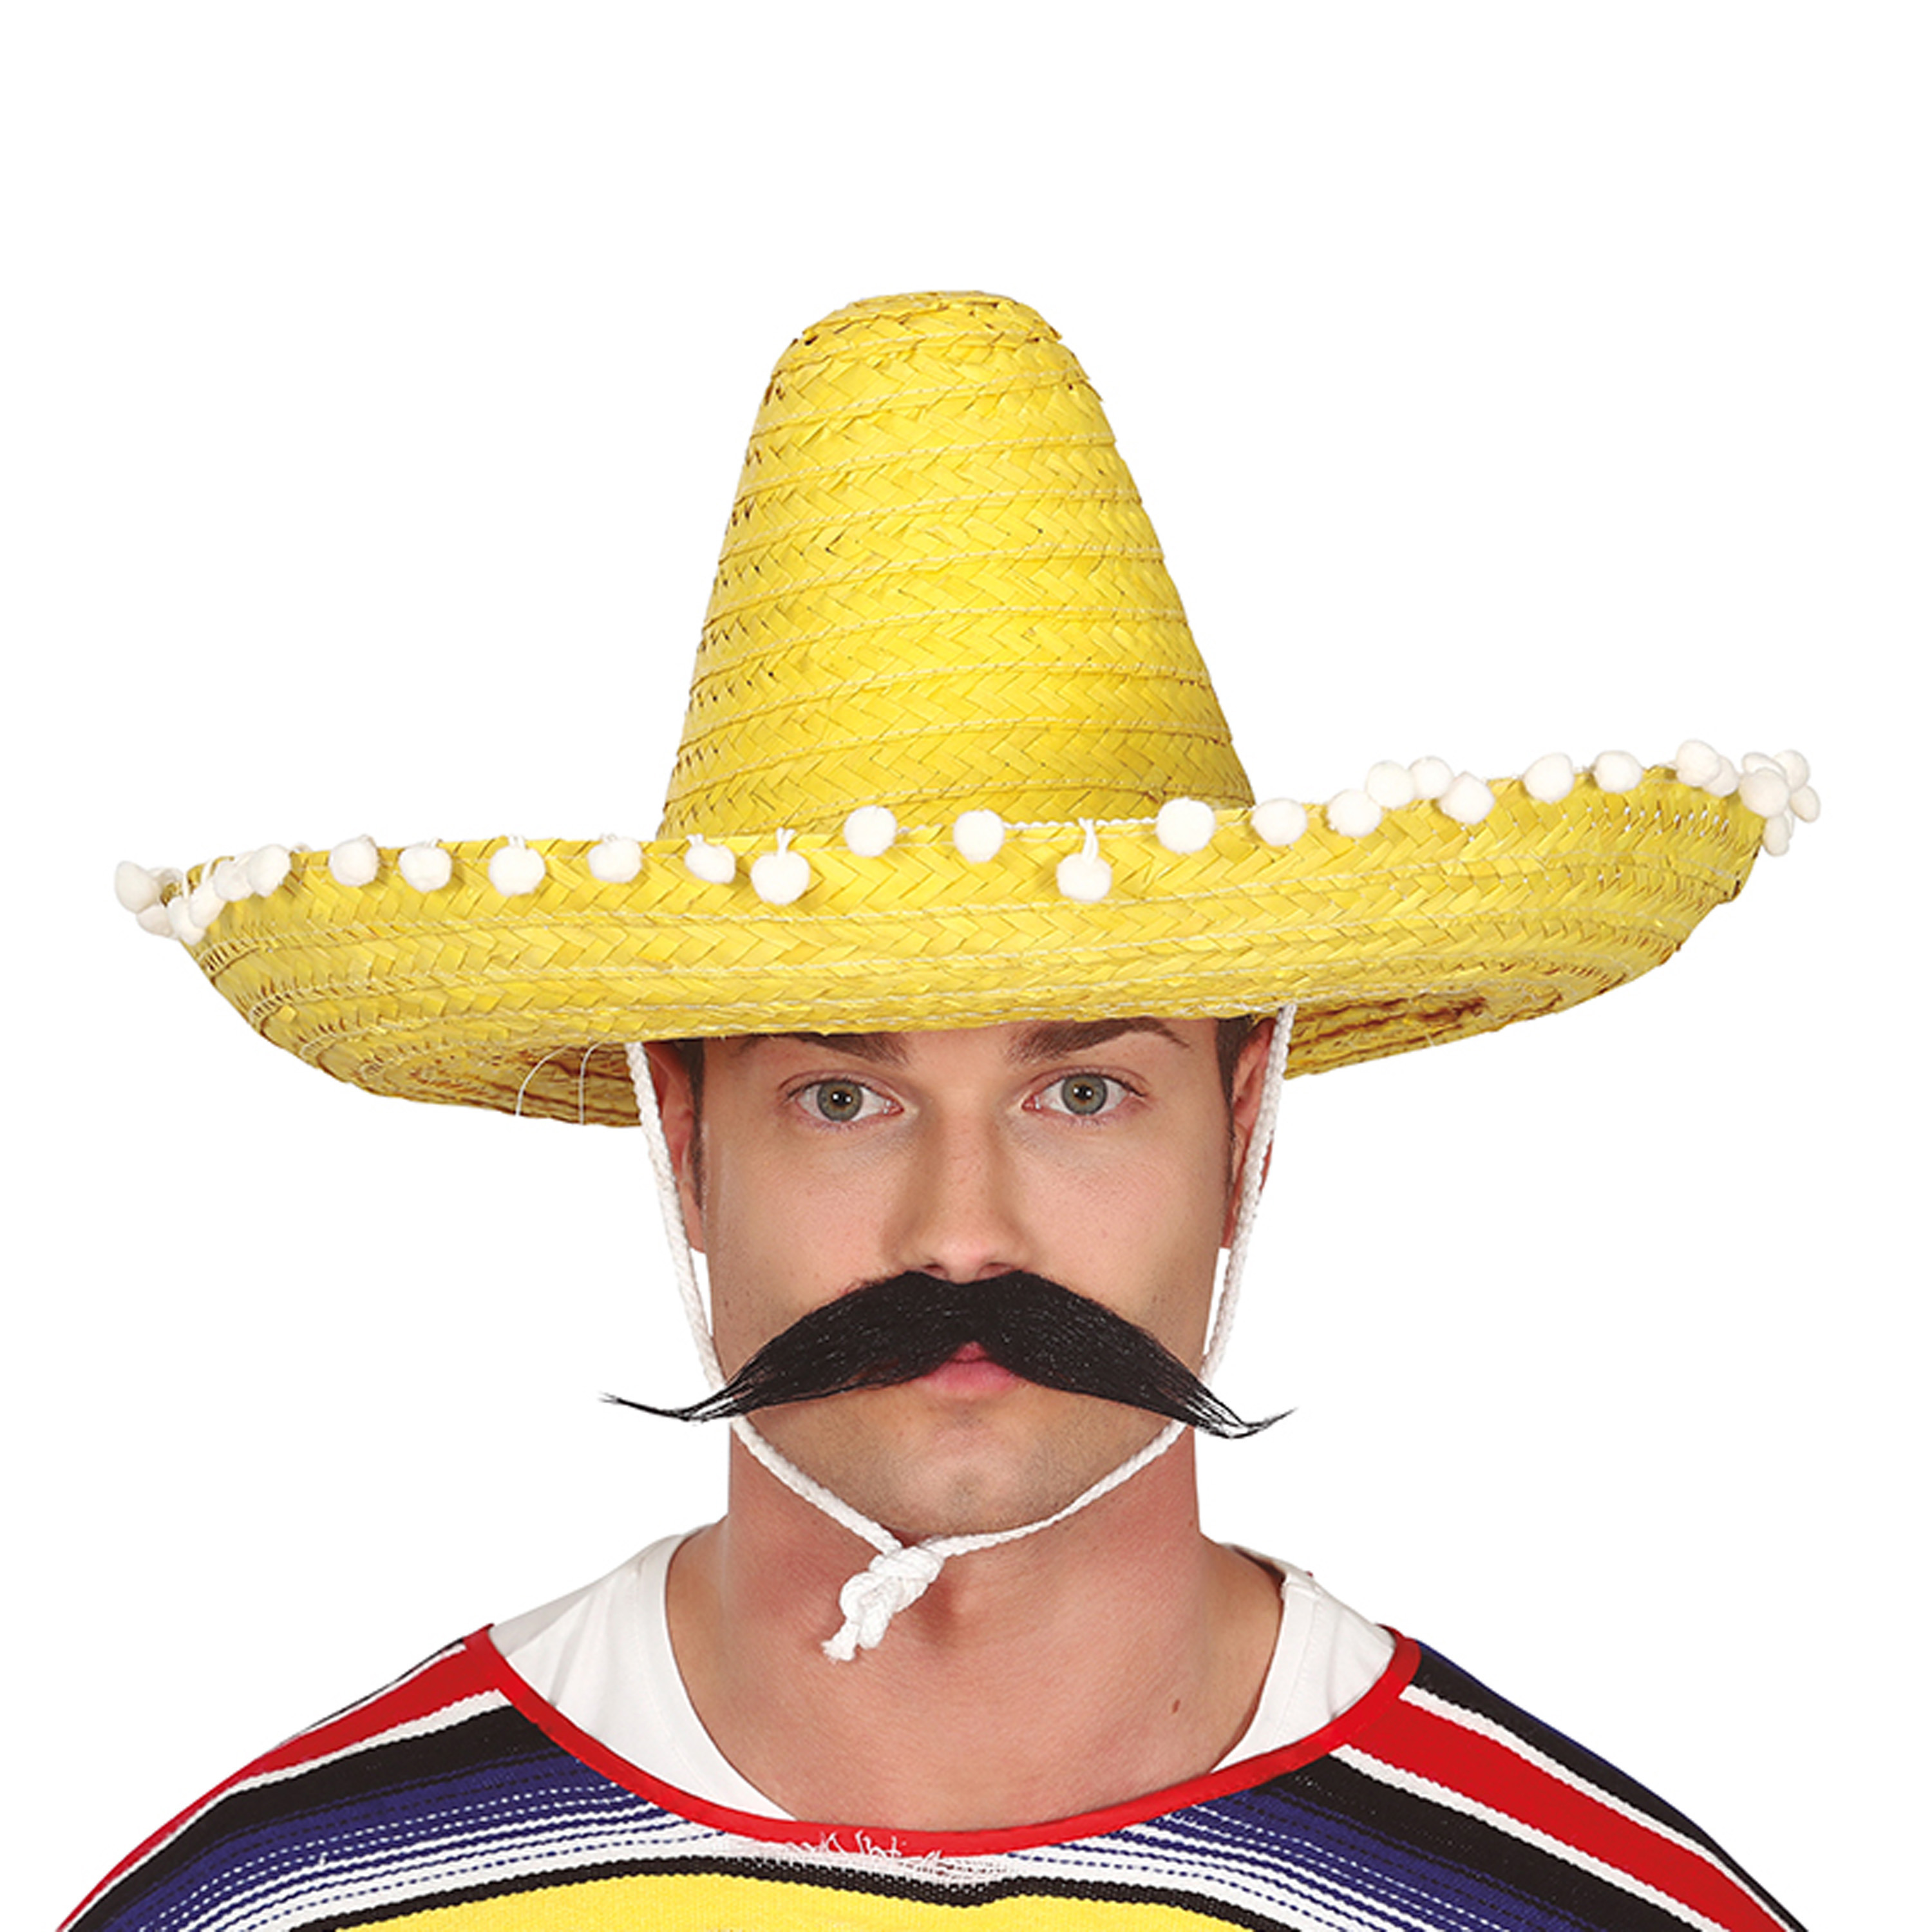 Fiestas Guirca Mexicaanse Sombrero hoed voor heren carnaval-verkleed accessoires geel